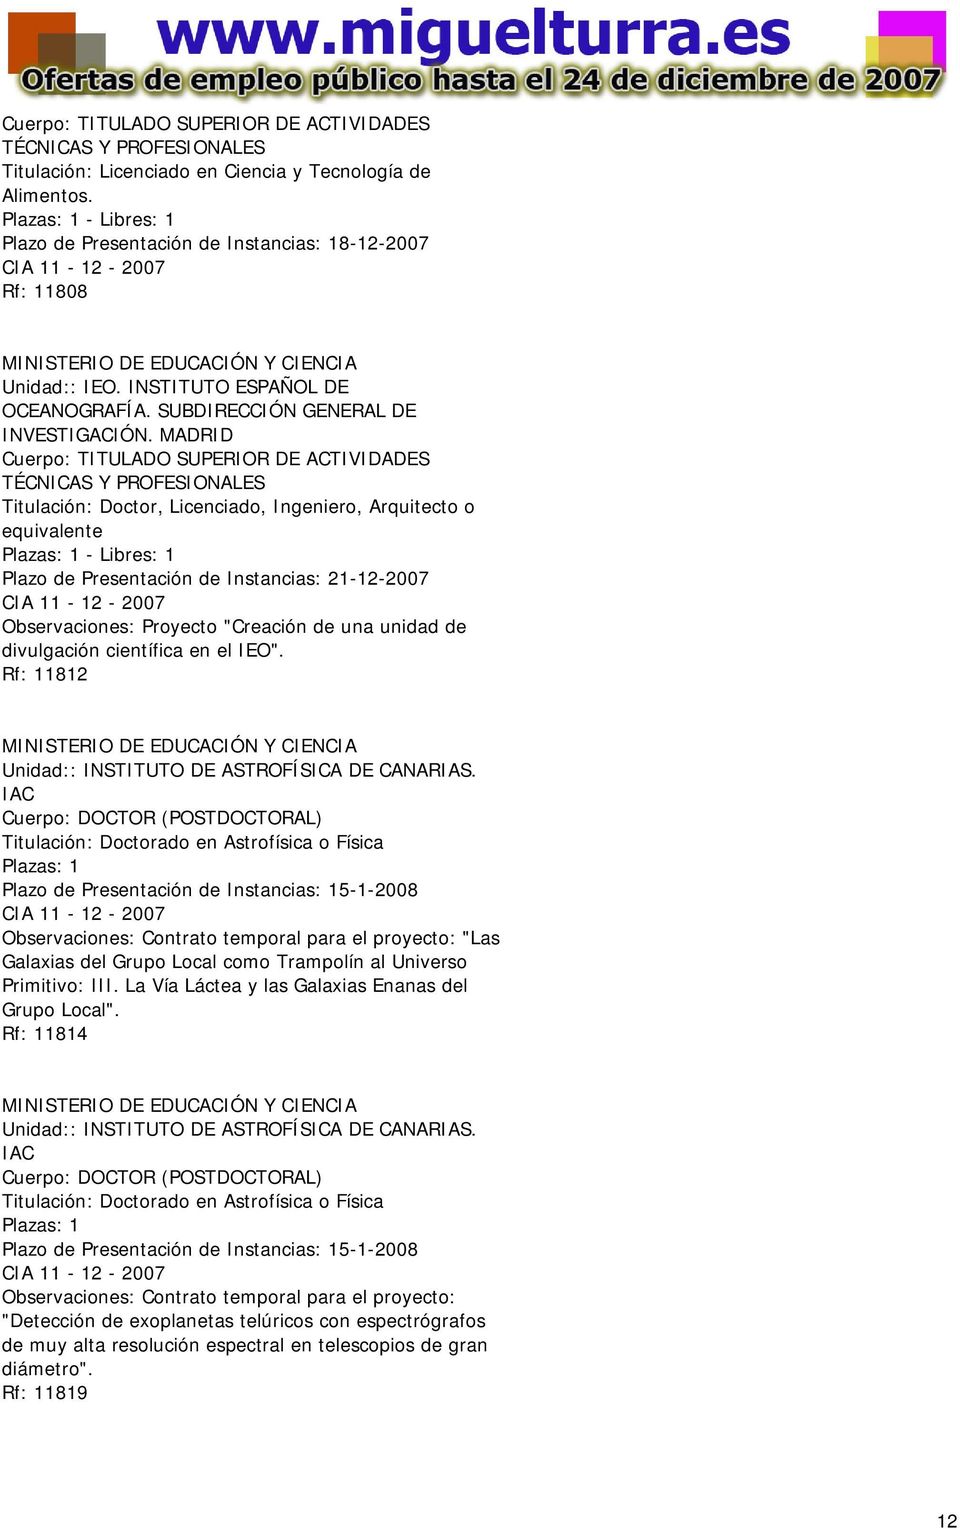 MADRID Cuerpo: TITULADO SUPERIOR DE ACTIVIDADES TÉCNICAS Y PROFESIONALES Titulación: Doctor, Licenciado, Ingeniero, Arquitecto o equivalente Plazo de Presentación de Instancias: 21-12-2007 CIA 11-12